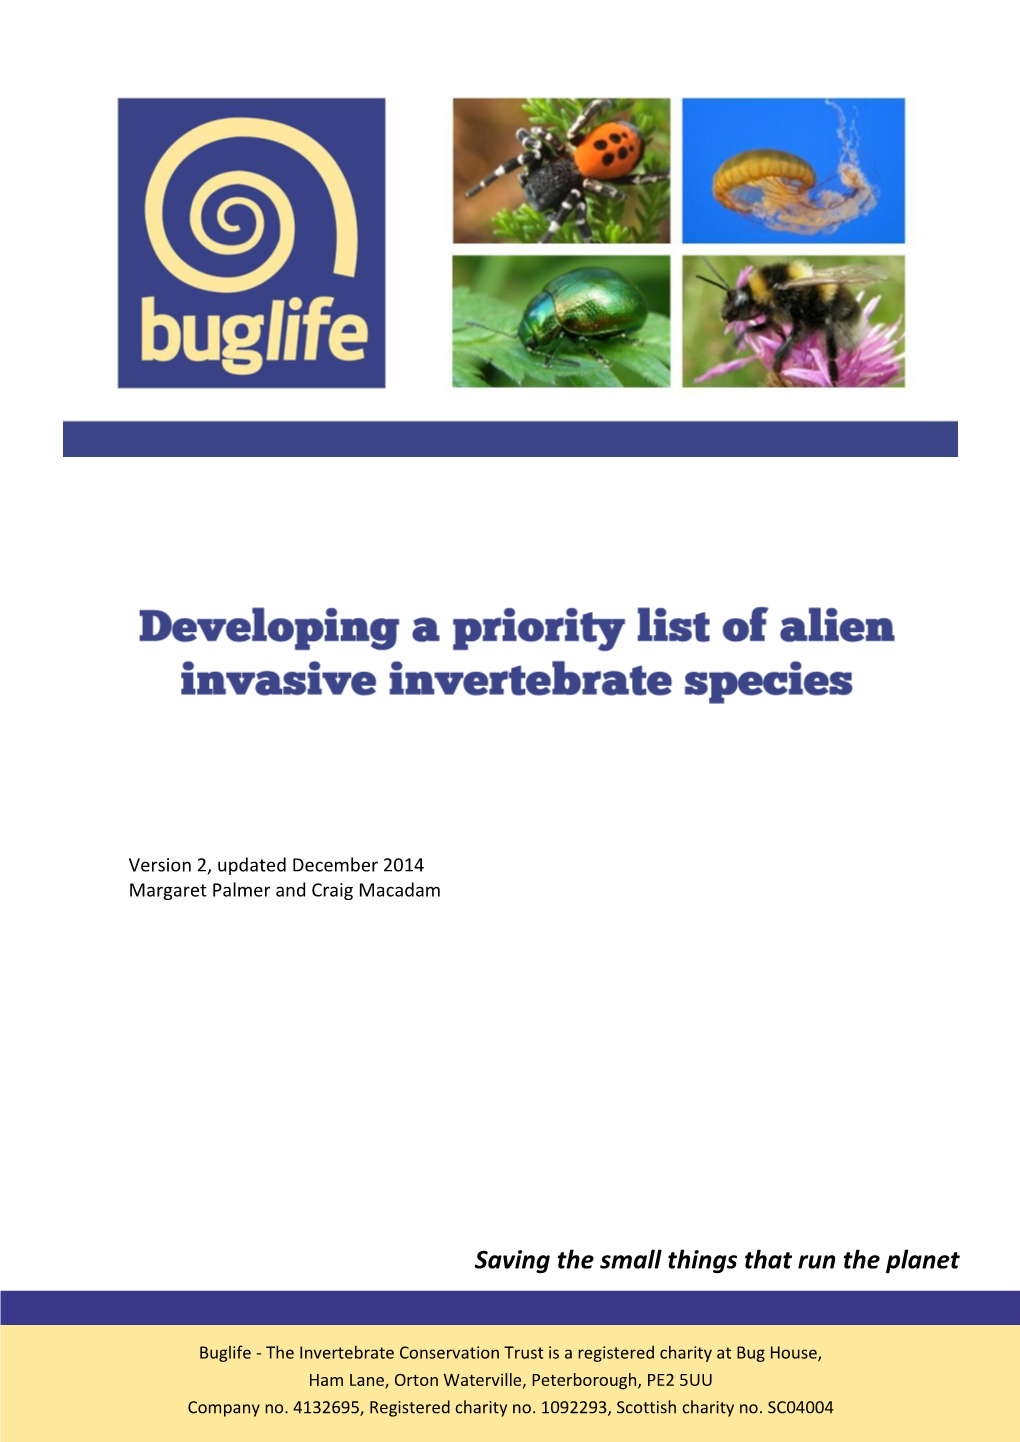 EU Regulation on Invasive Alien Species